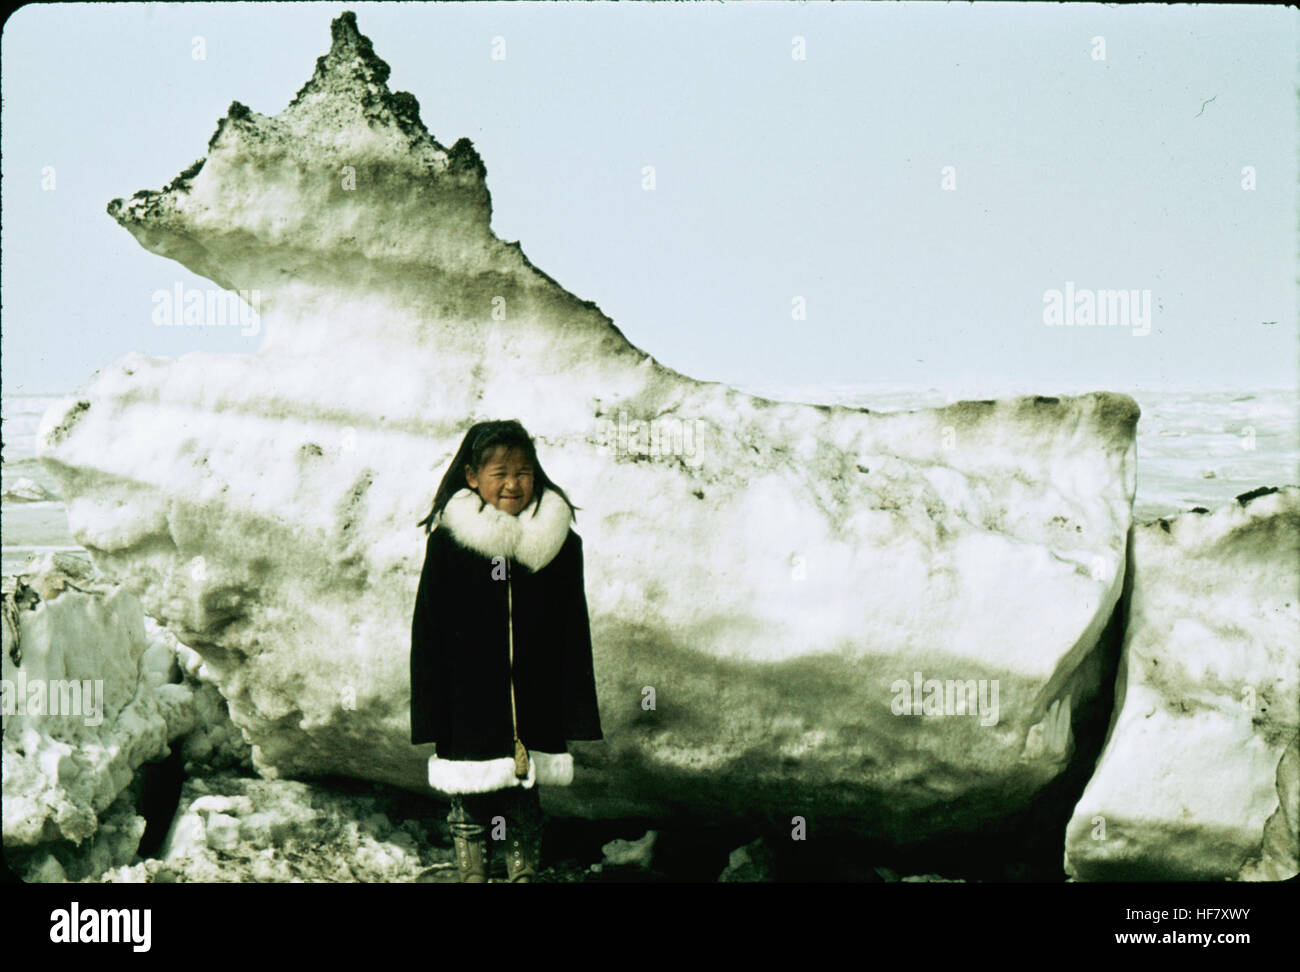 Eskimo child in front of ice block; Point Barrow, Alaska. Stock Photo